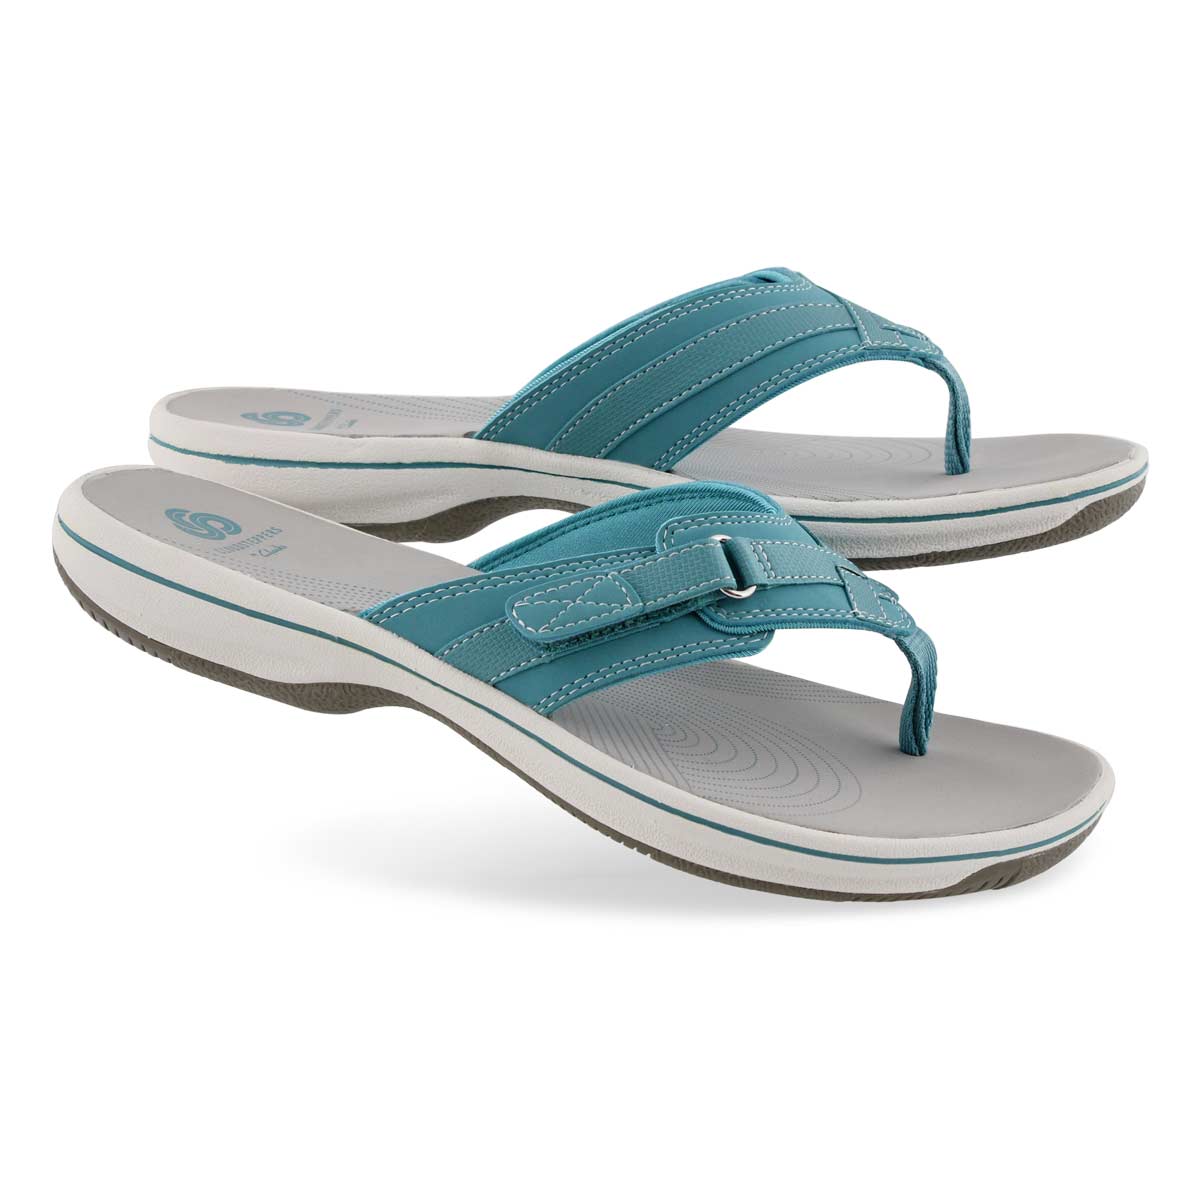 Clarks Women's BREEZE SEA aqua thong sandals | SoftMoc.com